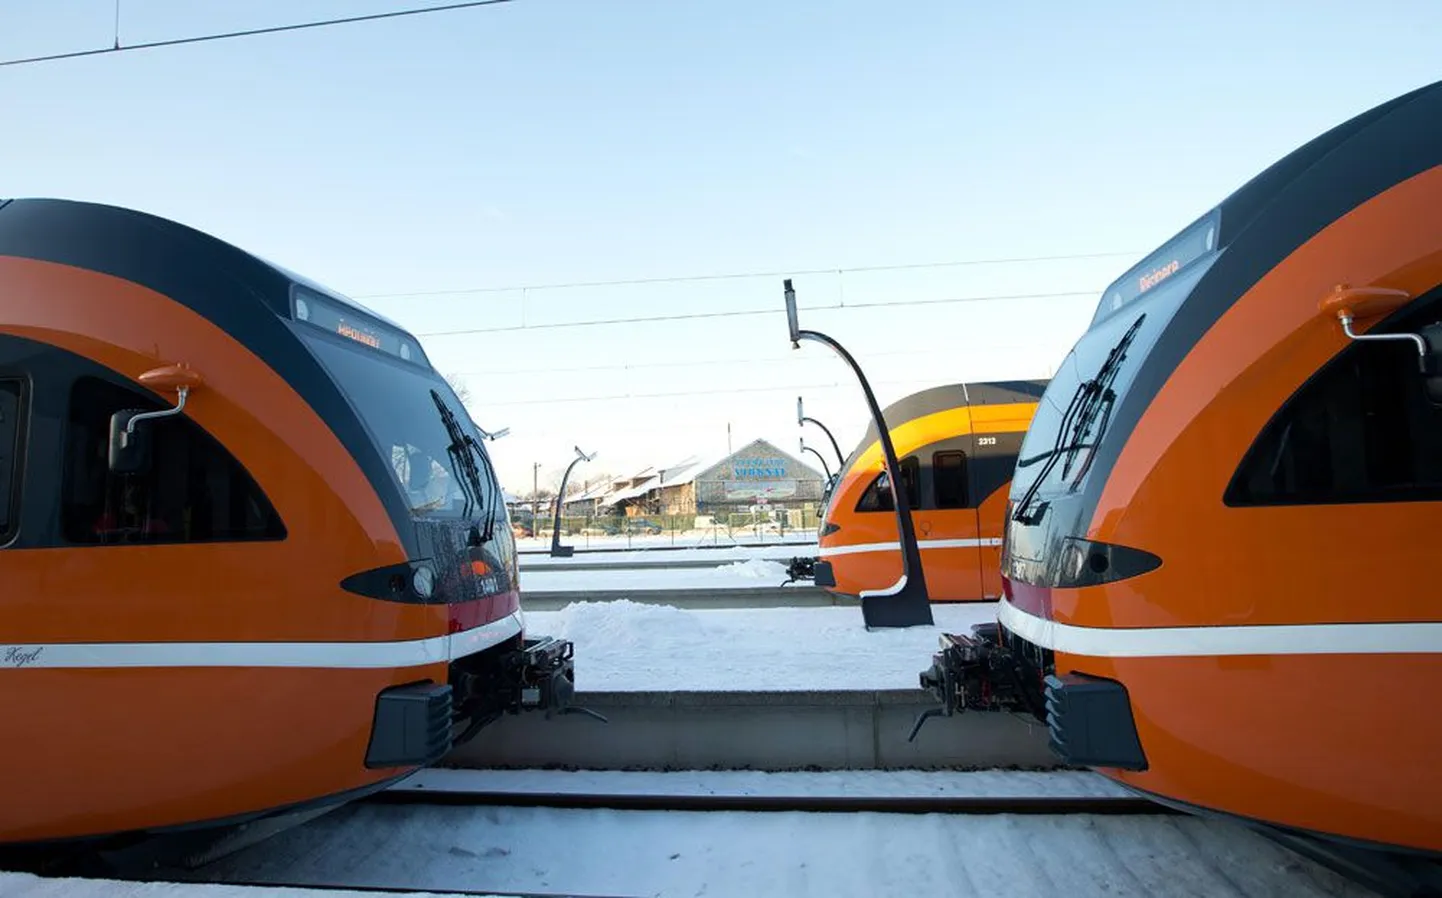 Balti jaamas seisavad nüüd eri suunda väljuvad rongid ühe perrooni ääres.